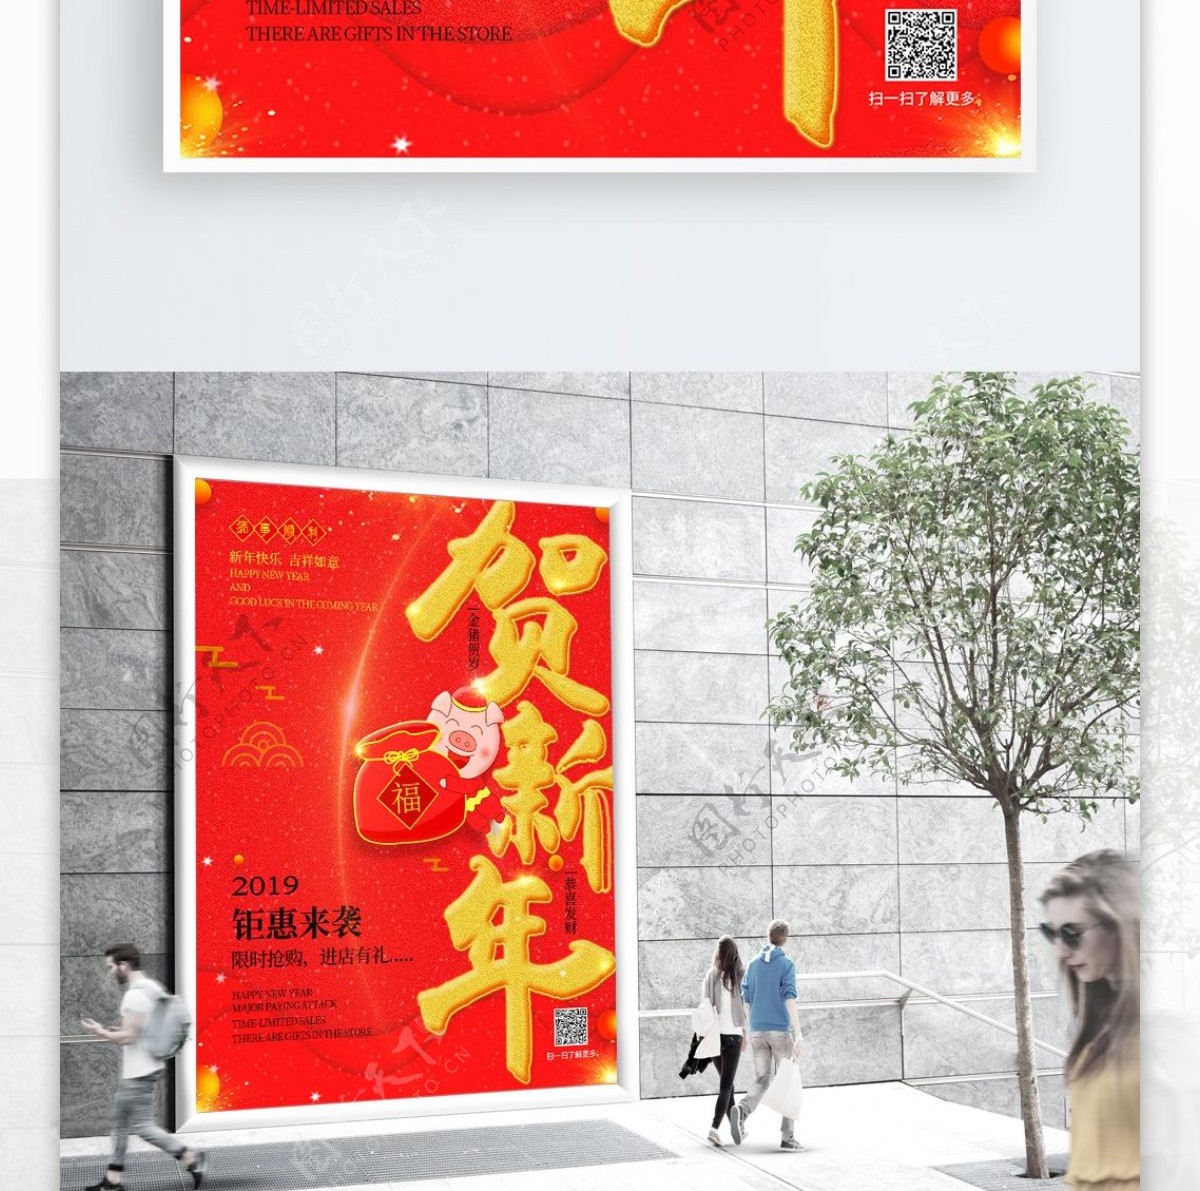 红色简约金猪贺岁贺新年促销宣传海报